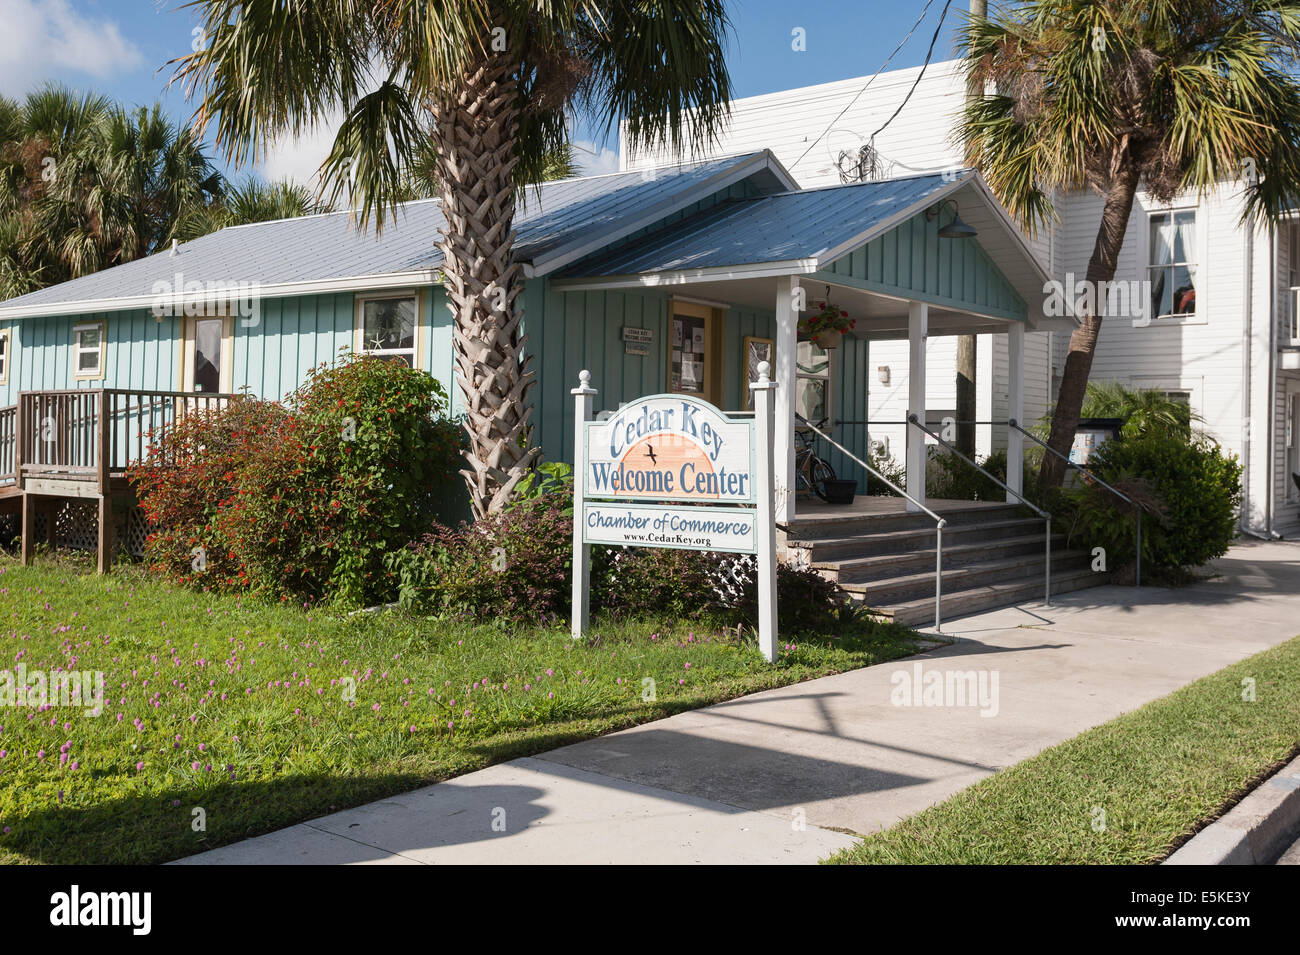 Cedar Key Florida Scenic Gulf Coast Welcome Center Scenic Gulf Coast City Streets Landscape Architecture Stock Photo